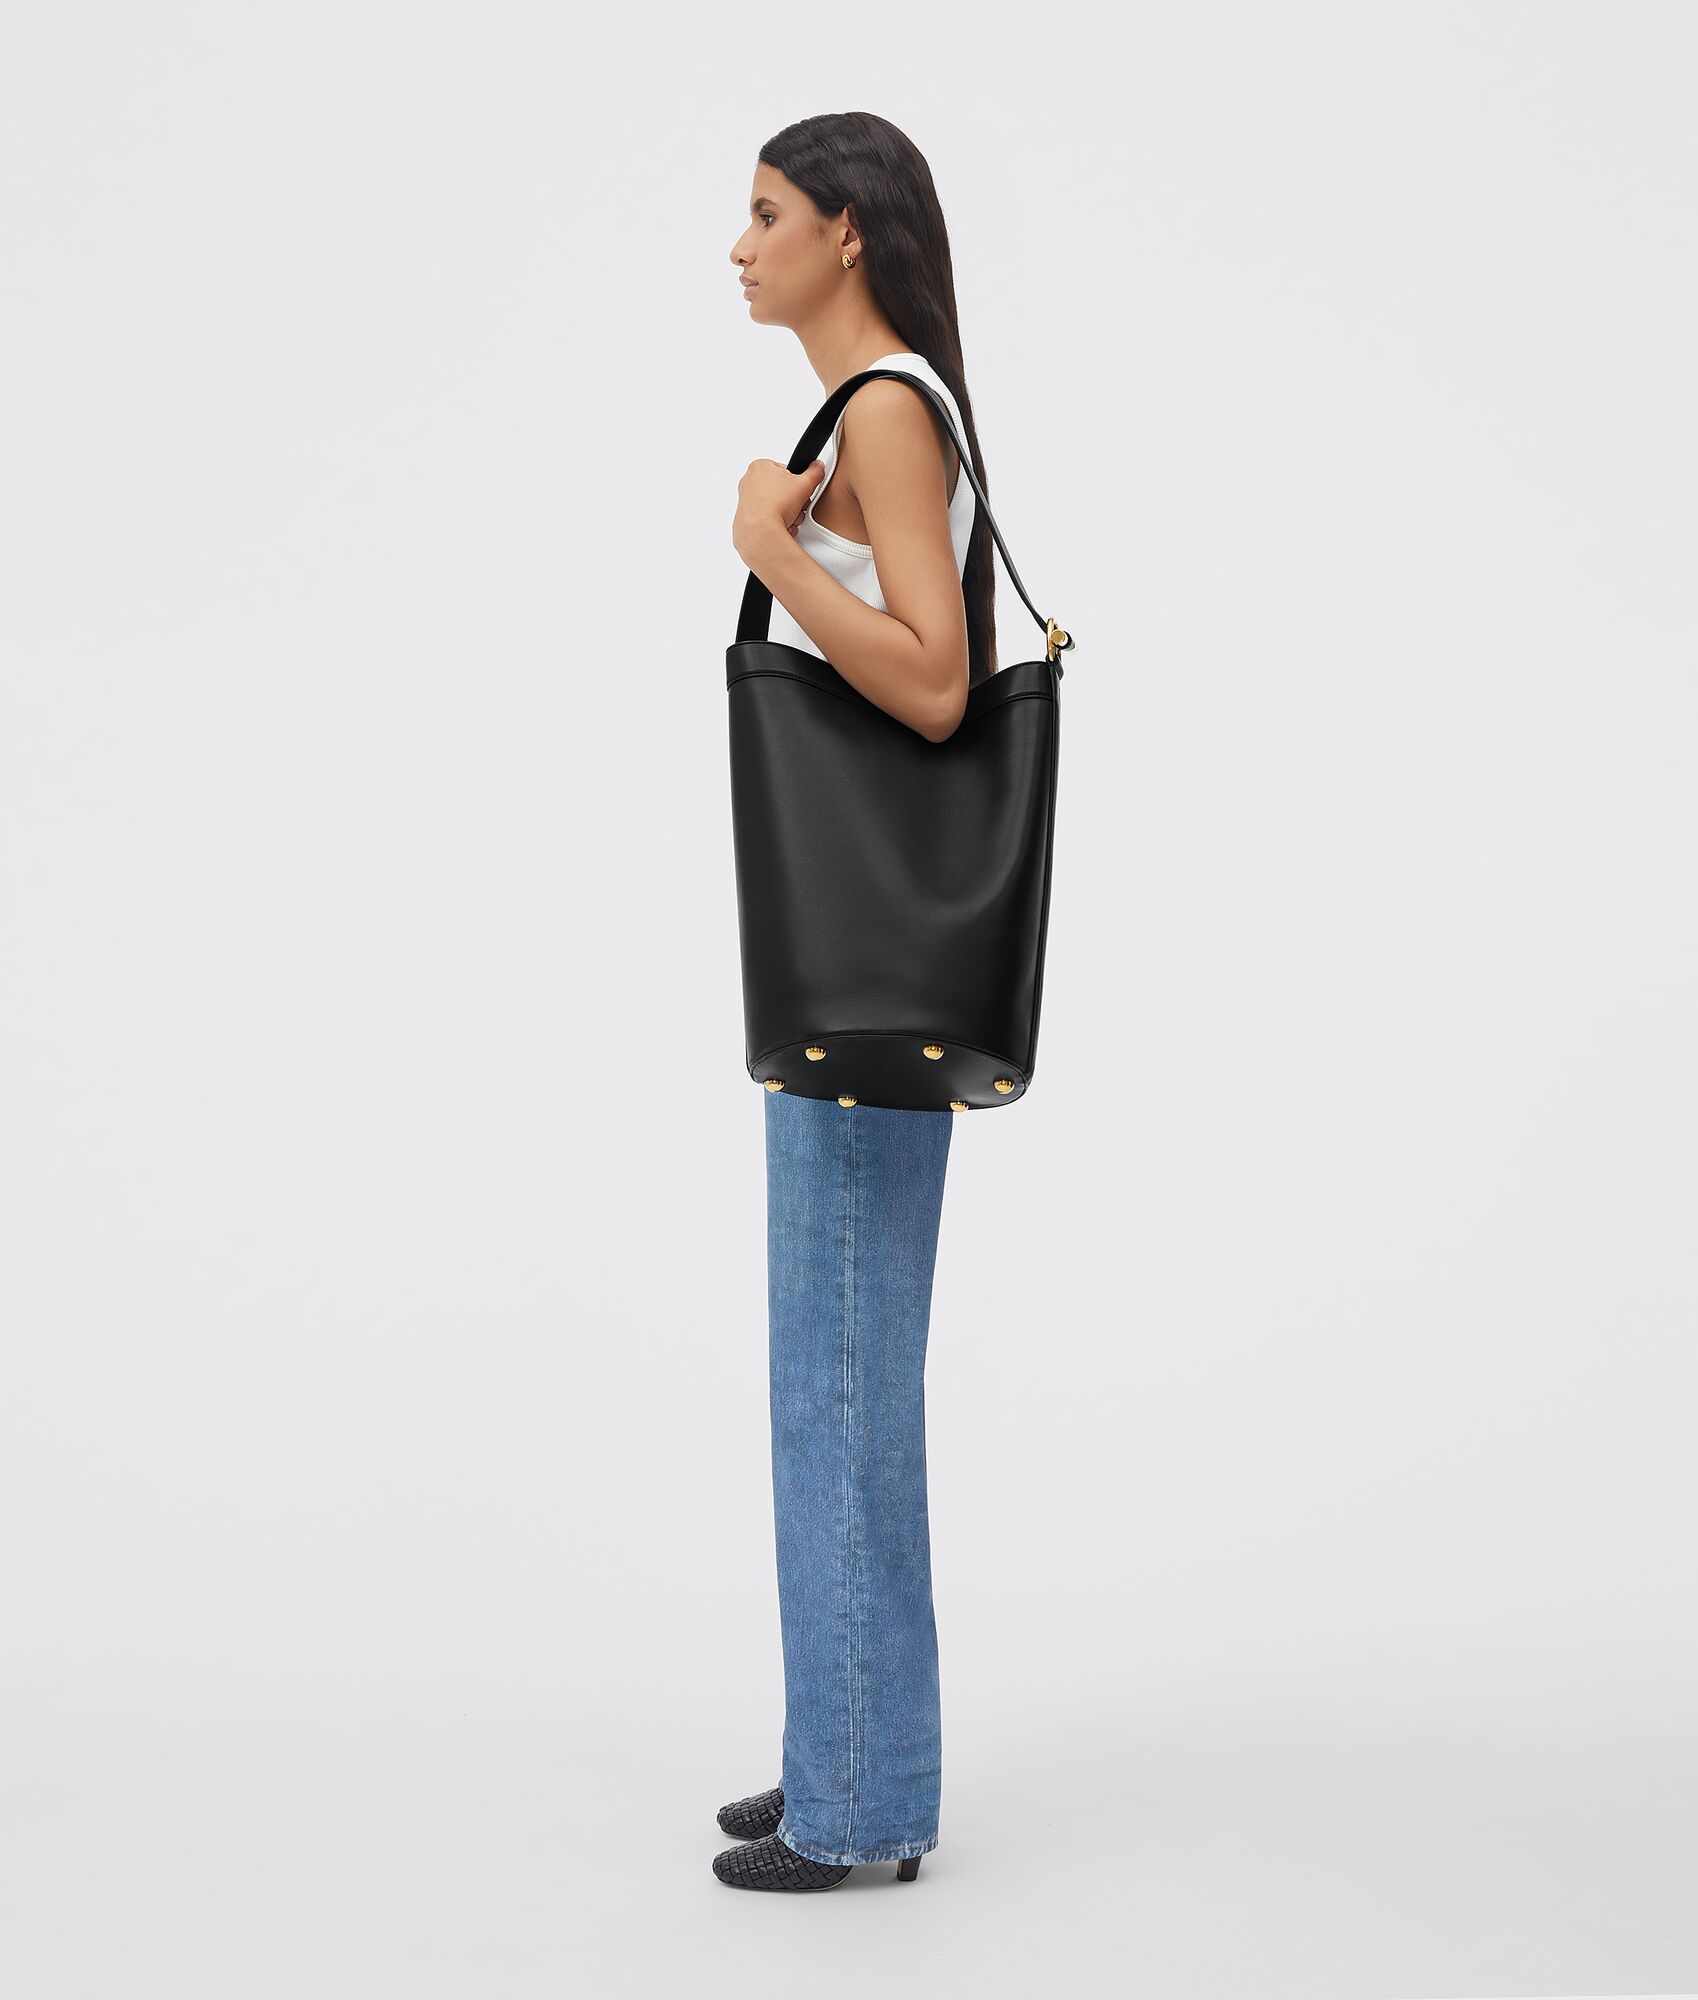 Bottega Veneta® Large Jj Shoulder Bag in Black. Shop online now.